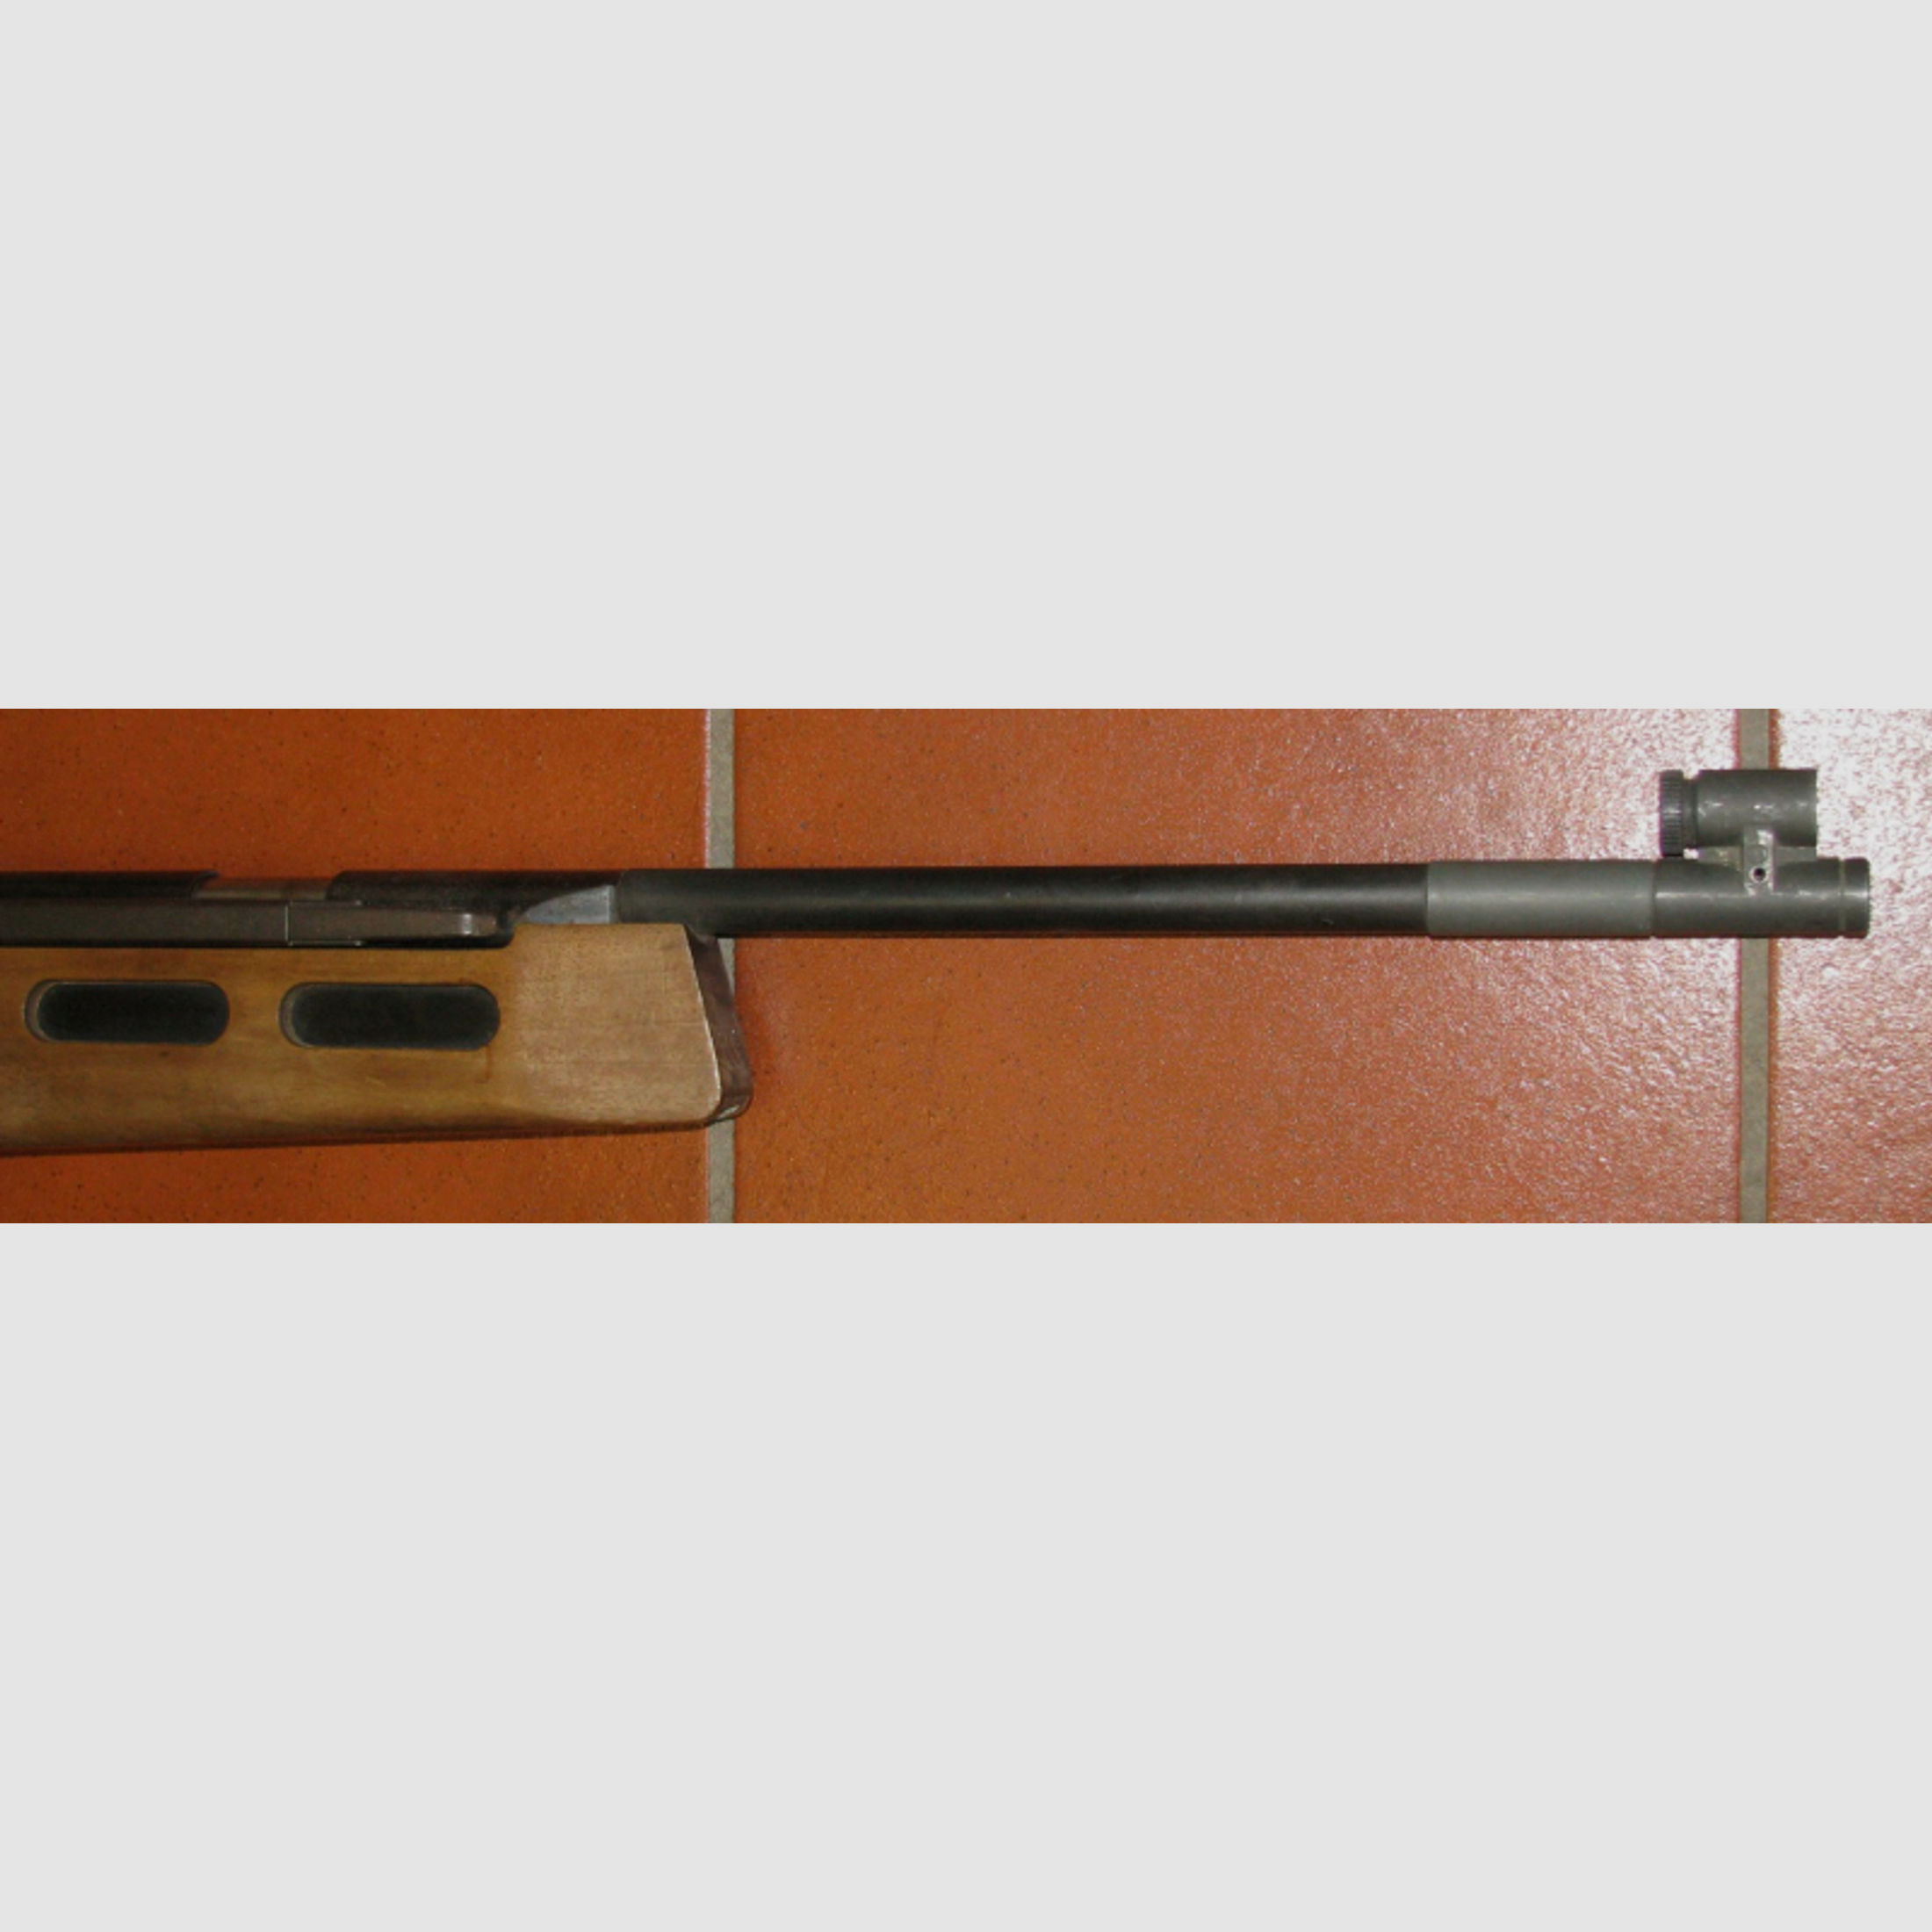 DIANA Luftgewehr, ein DIANA Mod. 75 mit original Diopter, Bitte ansehen